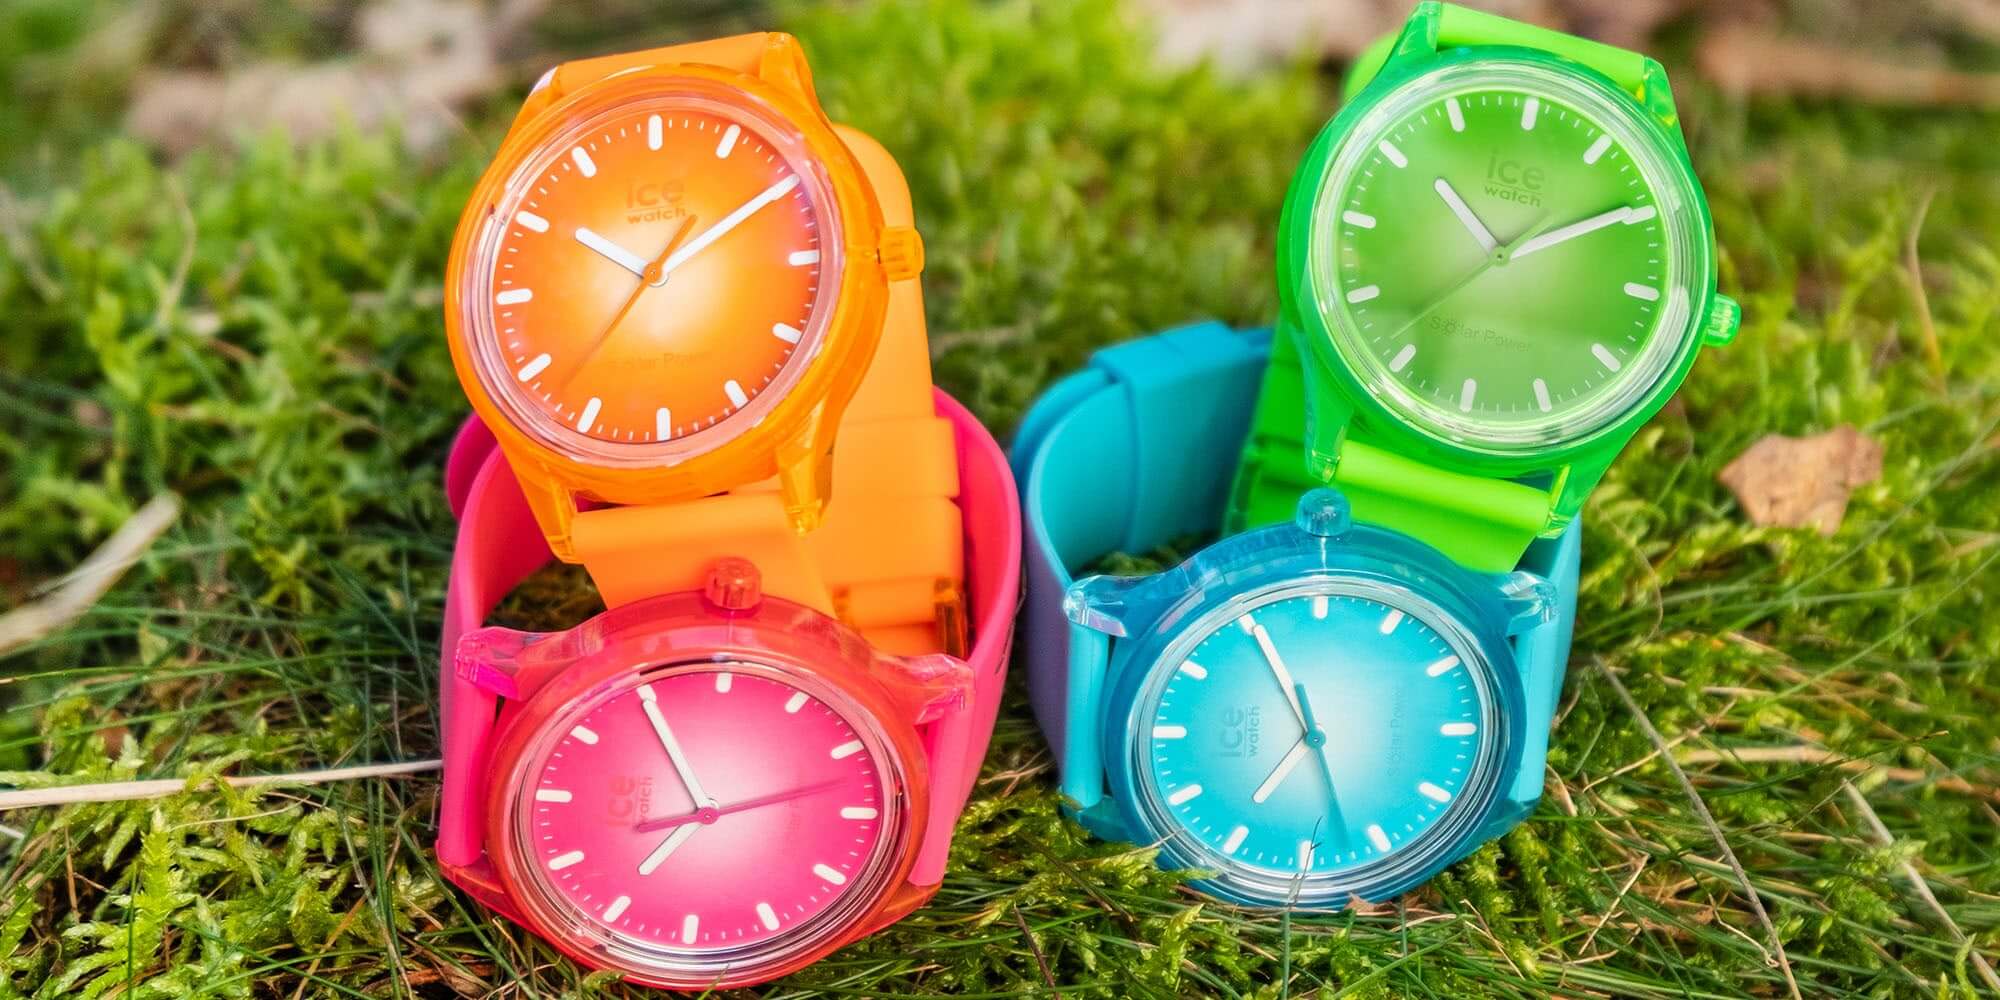 腕時計プレゼントおしゃれカジュアルプチプラ価格1万円以下ポップ多色ICE-WATCH(アイスウォッチ)